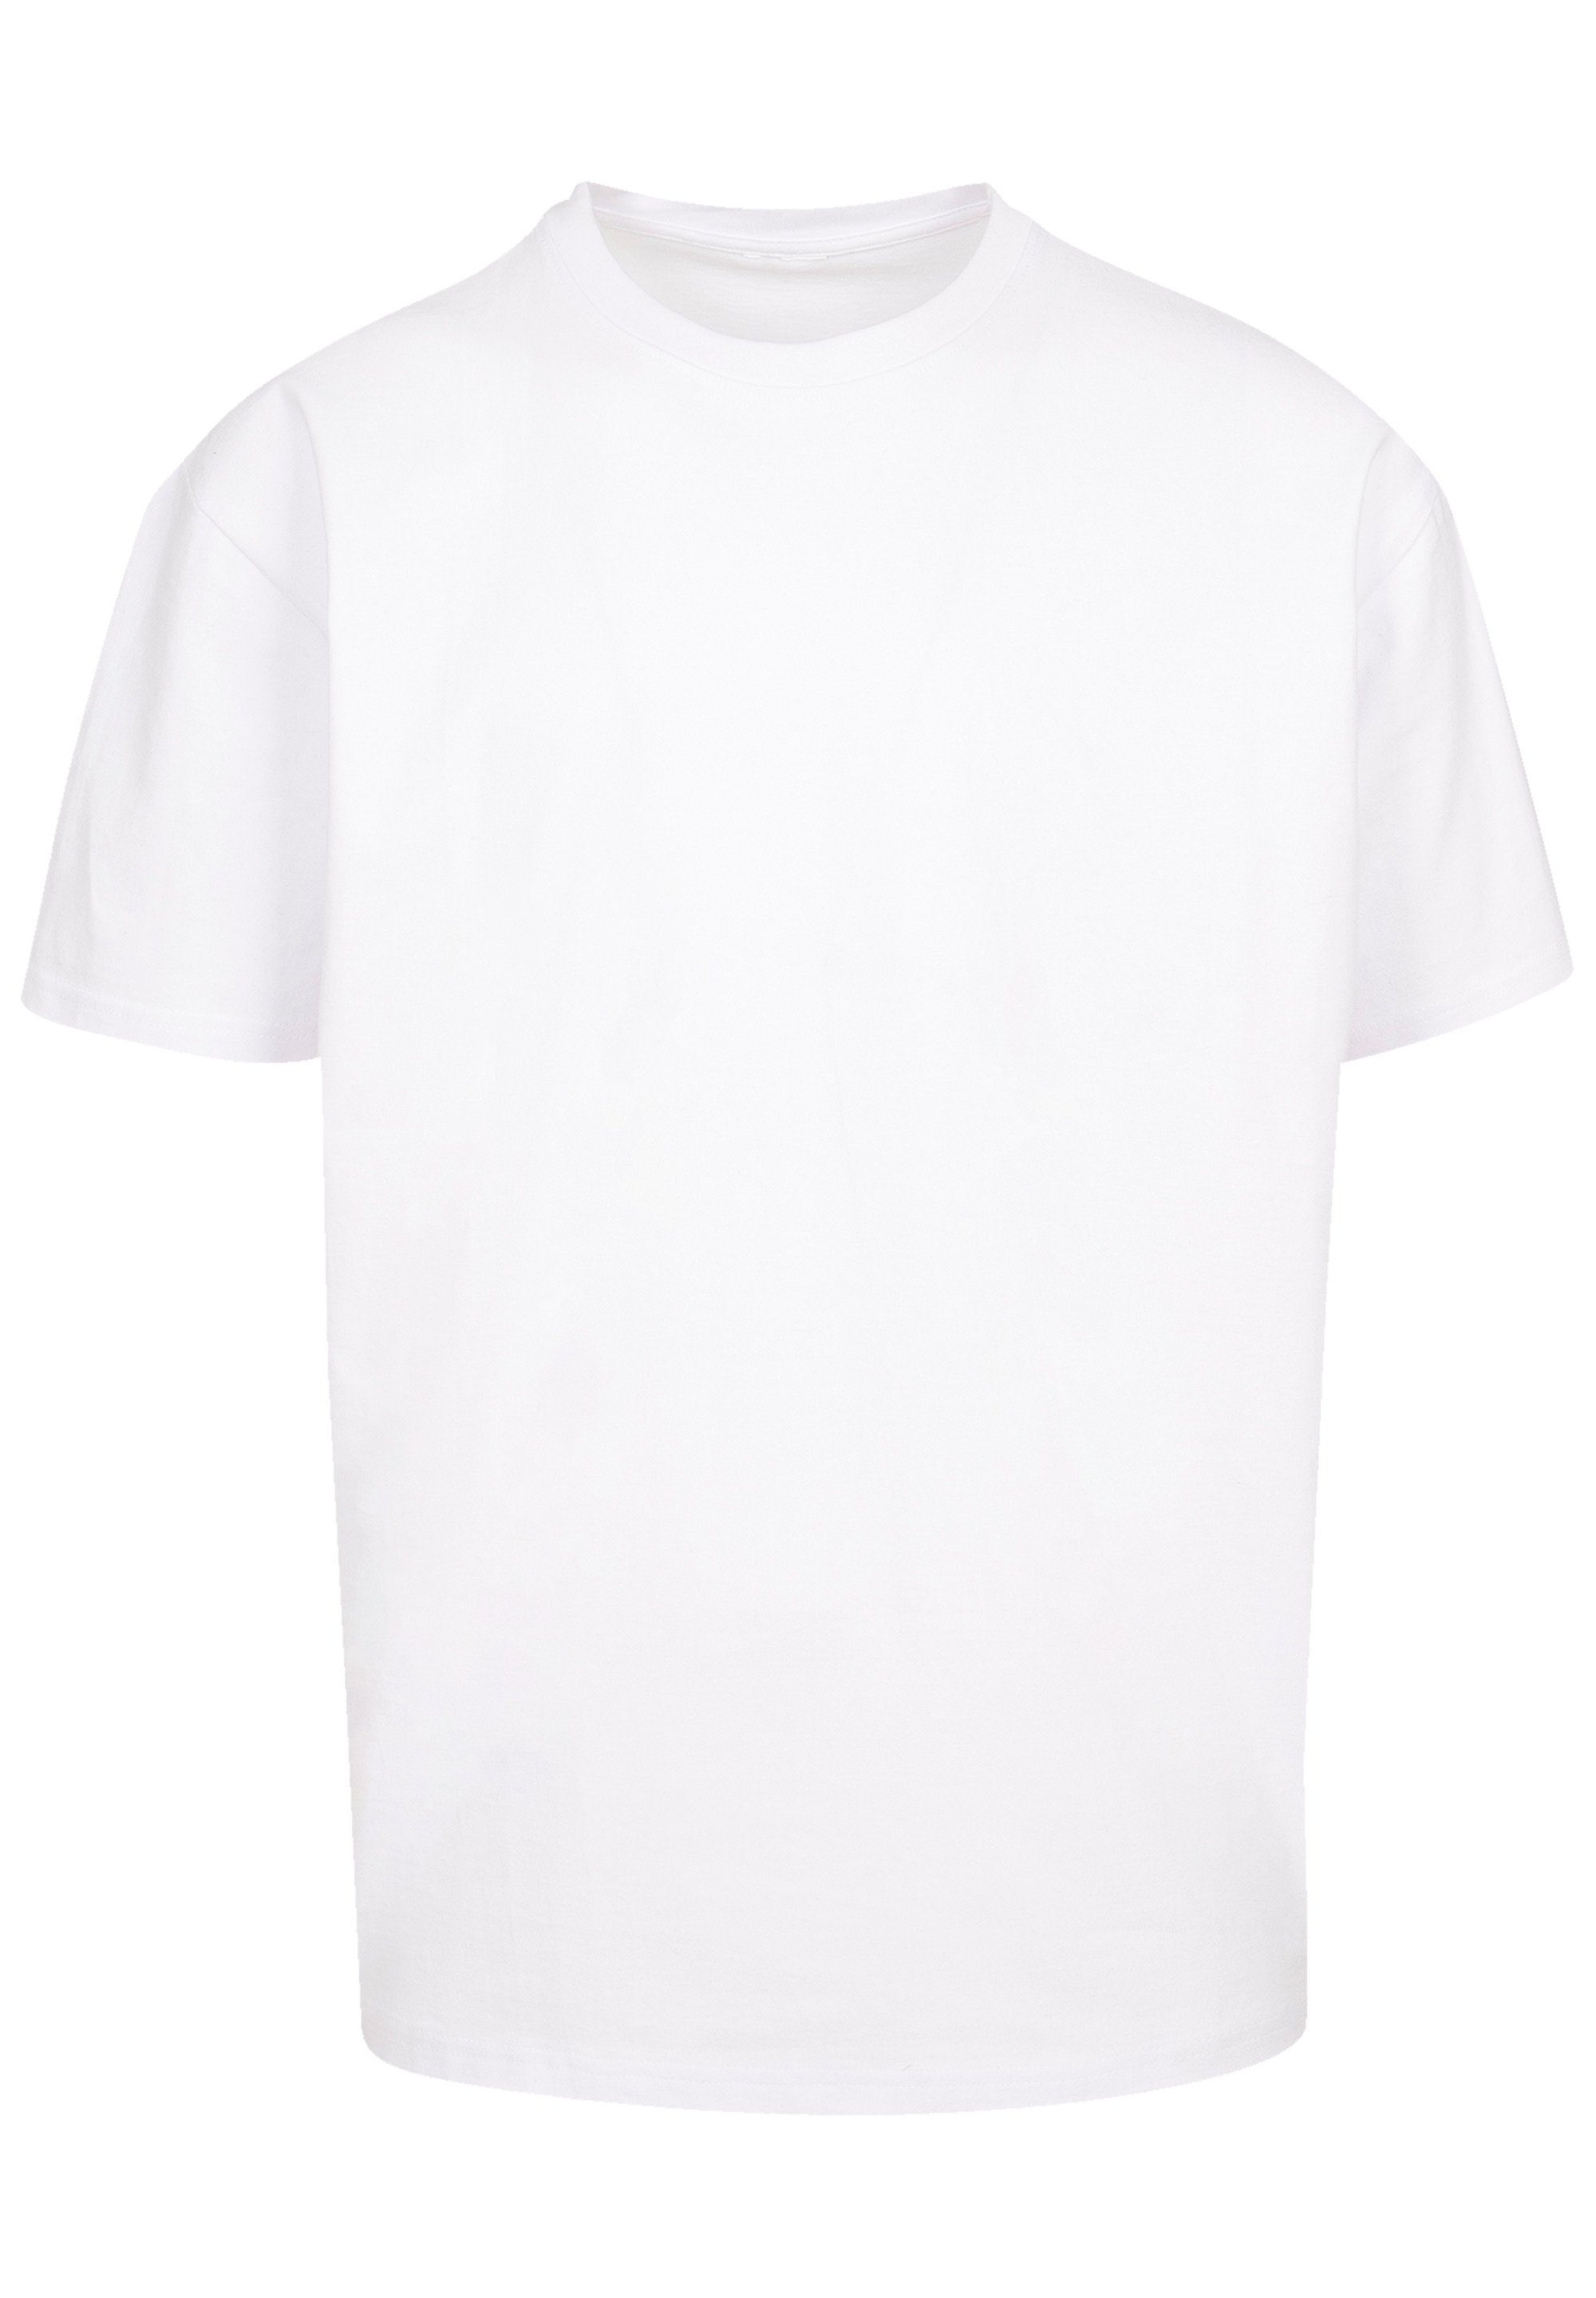 T-Shirt Schultern Print, Skelett Yoga F4NT4STIC Halloween Namaste Passform überschnittene Weite und